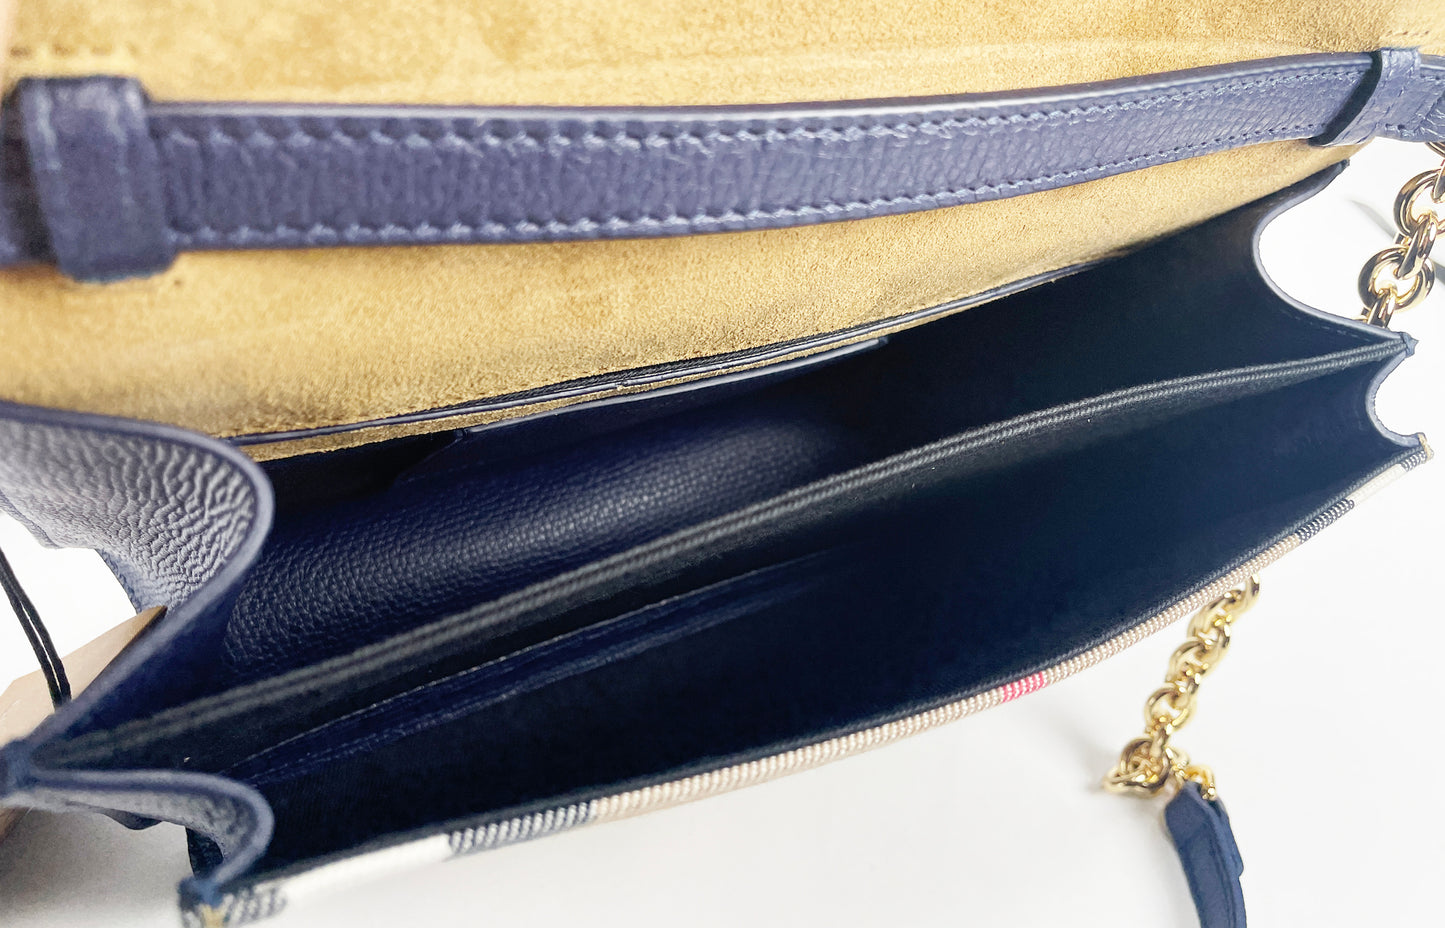 Burberry macken petit sac bandoulière en cuir à carreaux bleu régence